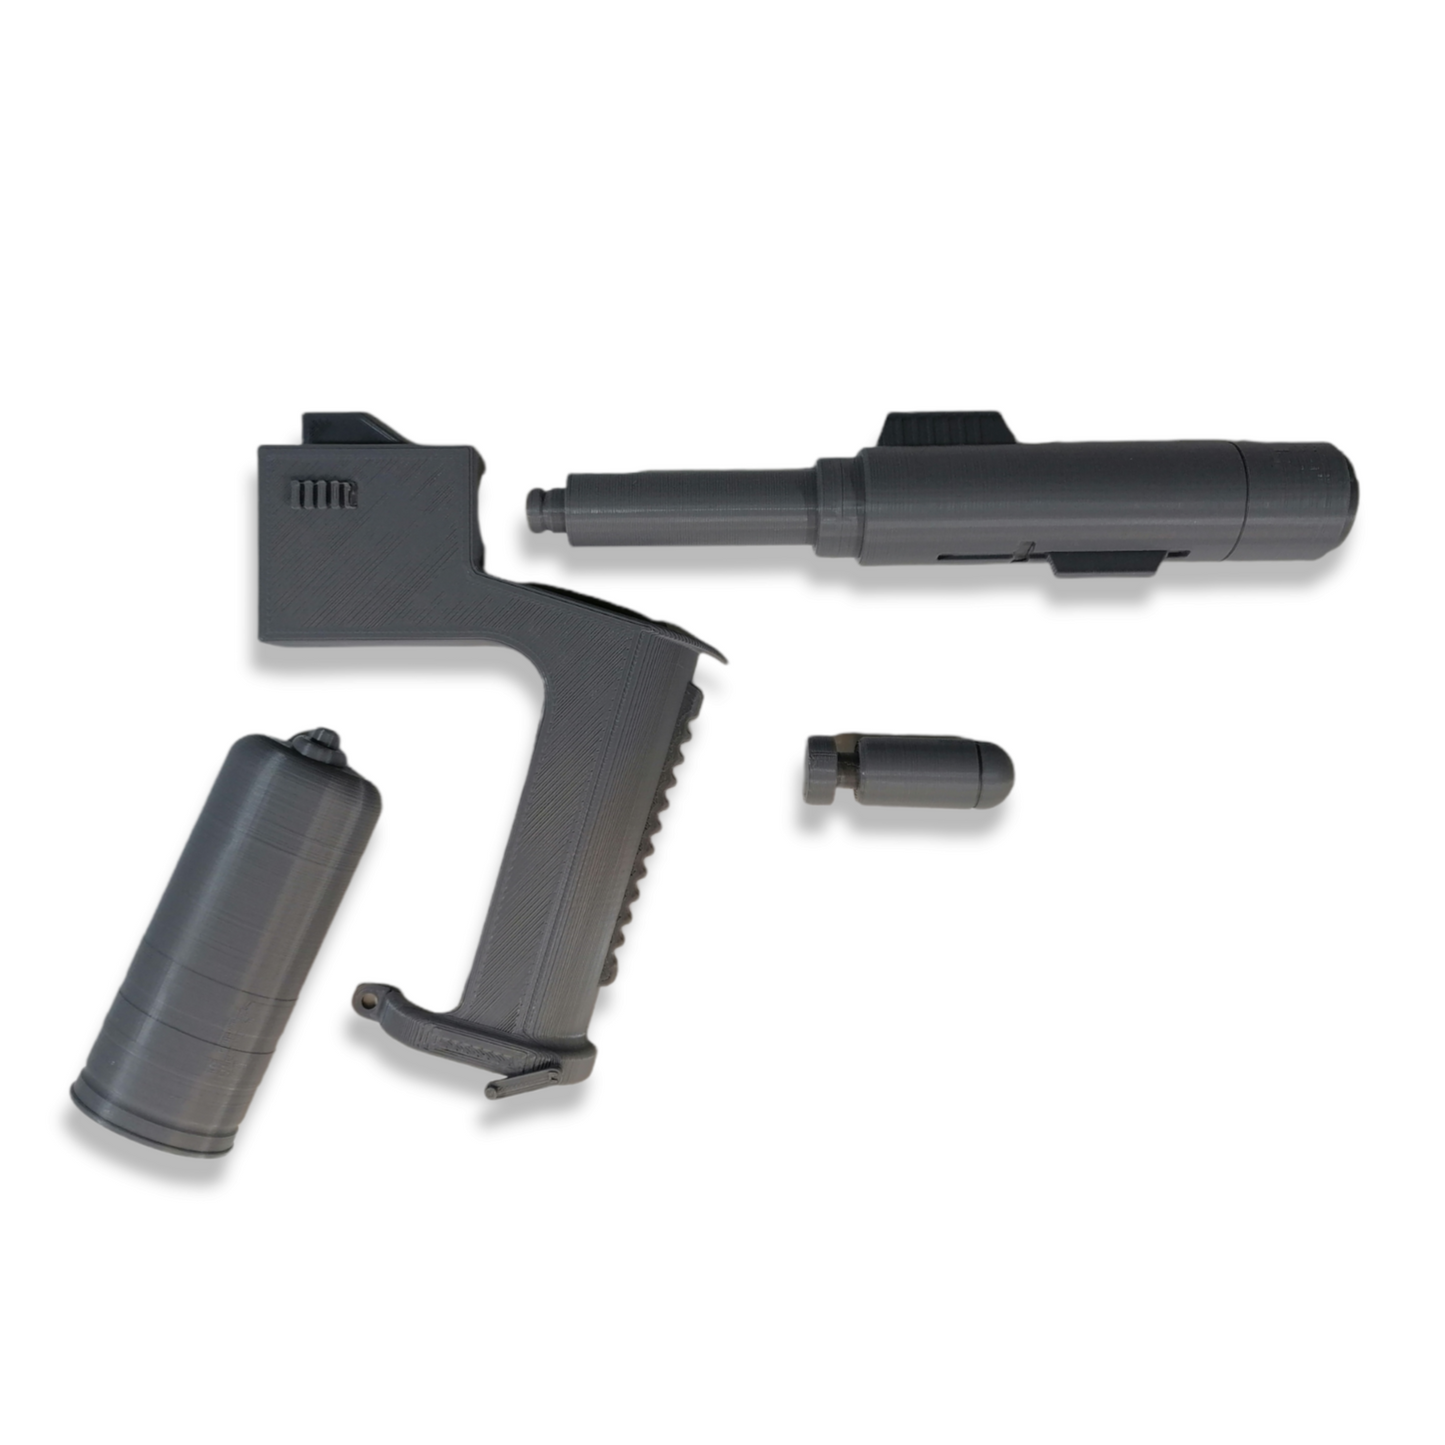 SHARK GUN - Film Prop - 3D Printed Replica